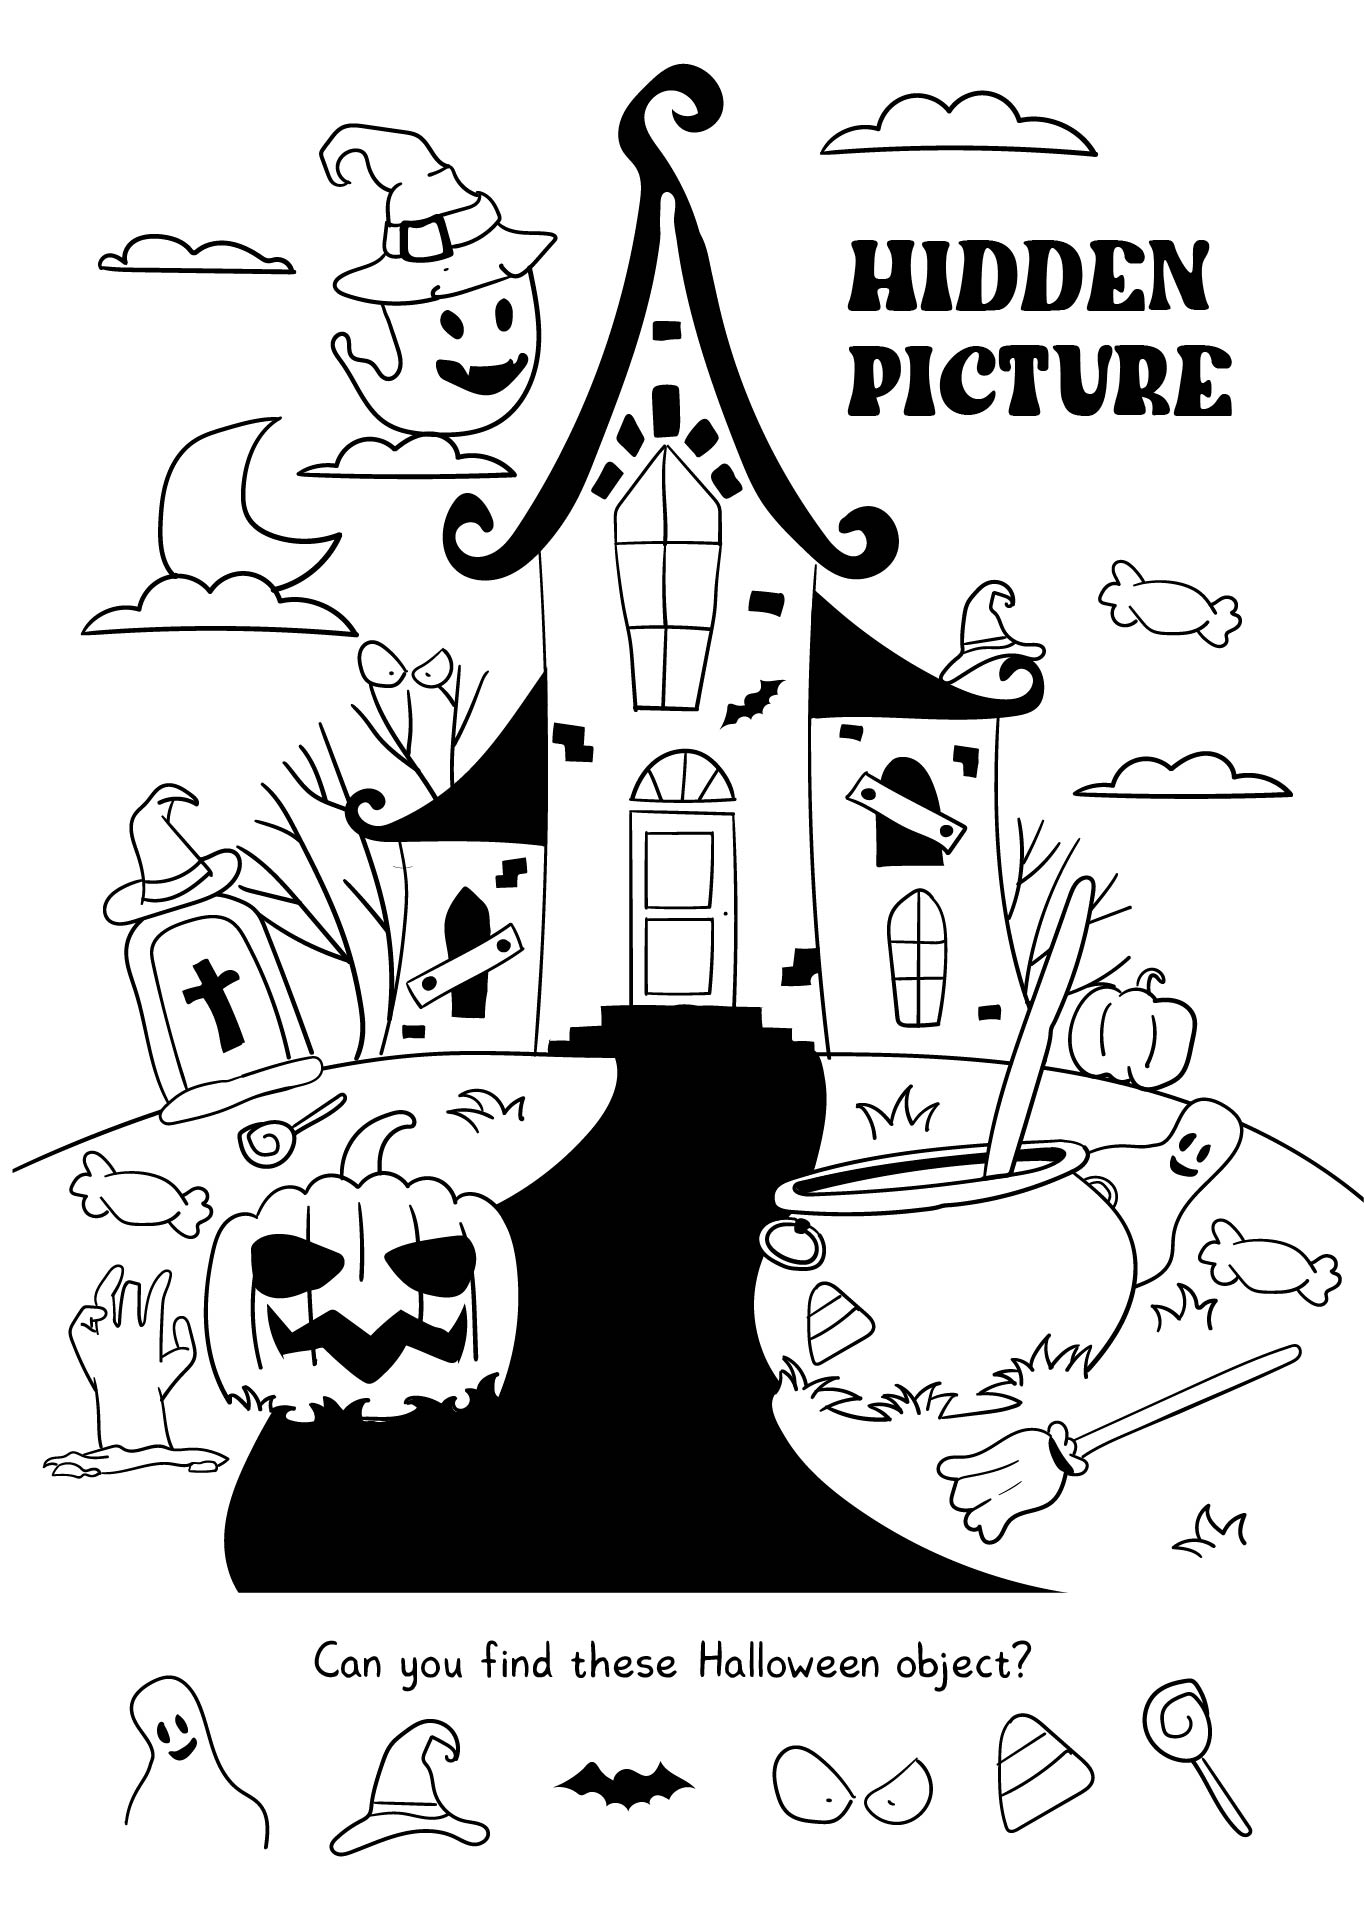 Halloween Hidden Picture Printable Classroom Game